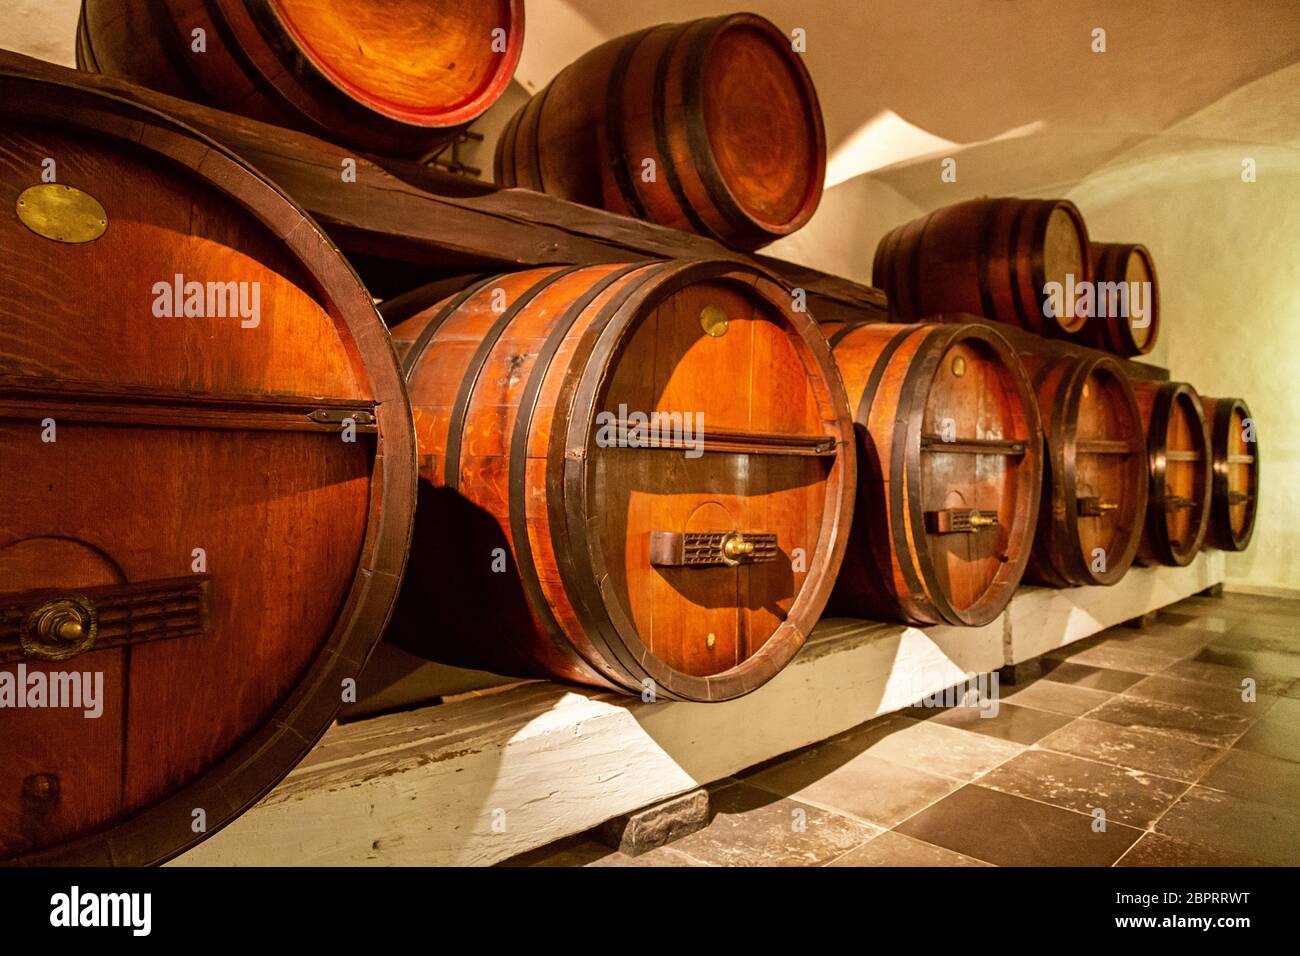 Antica cantina. Pila delle botti di vino in una cantina di vini. Vecchie botti in legno con il vino in un archivio di vino. Botti da vino impilati nella vecchia cantina del wi Foto Stock